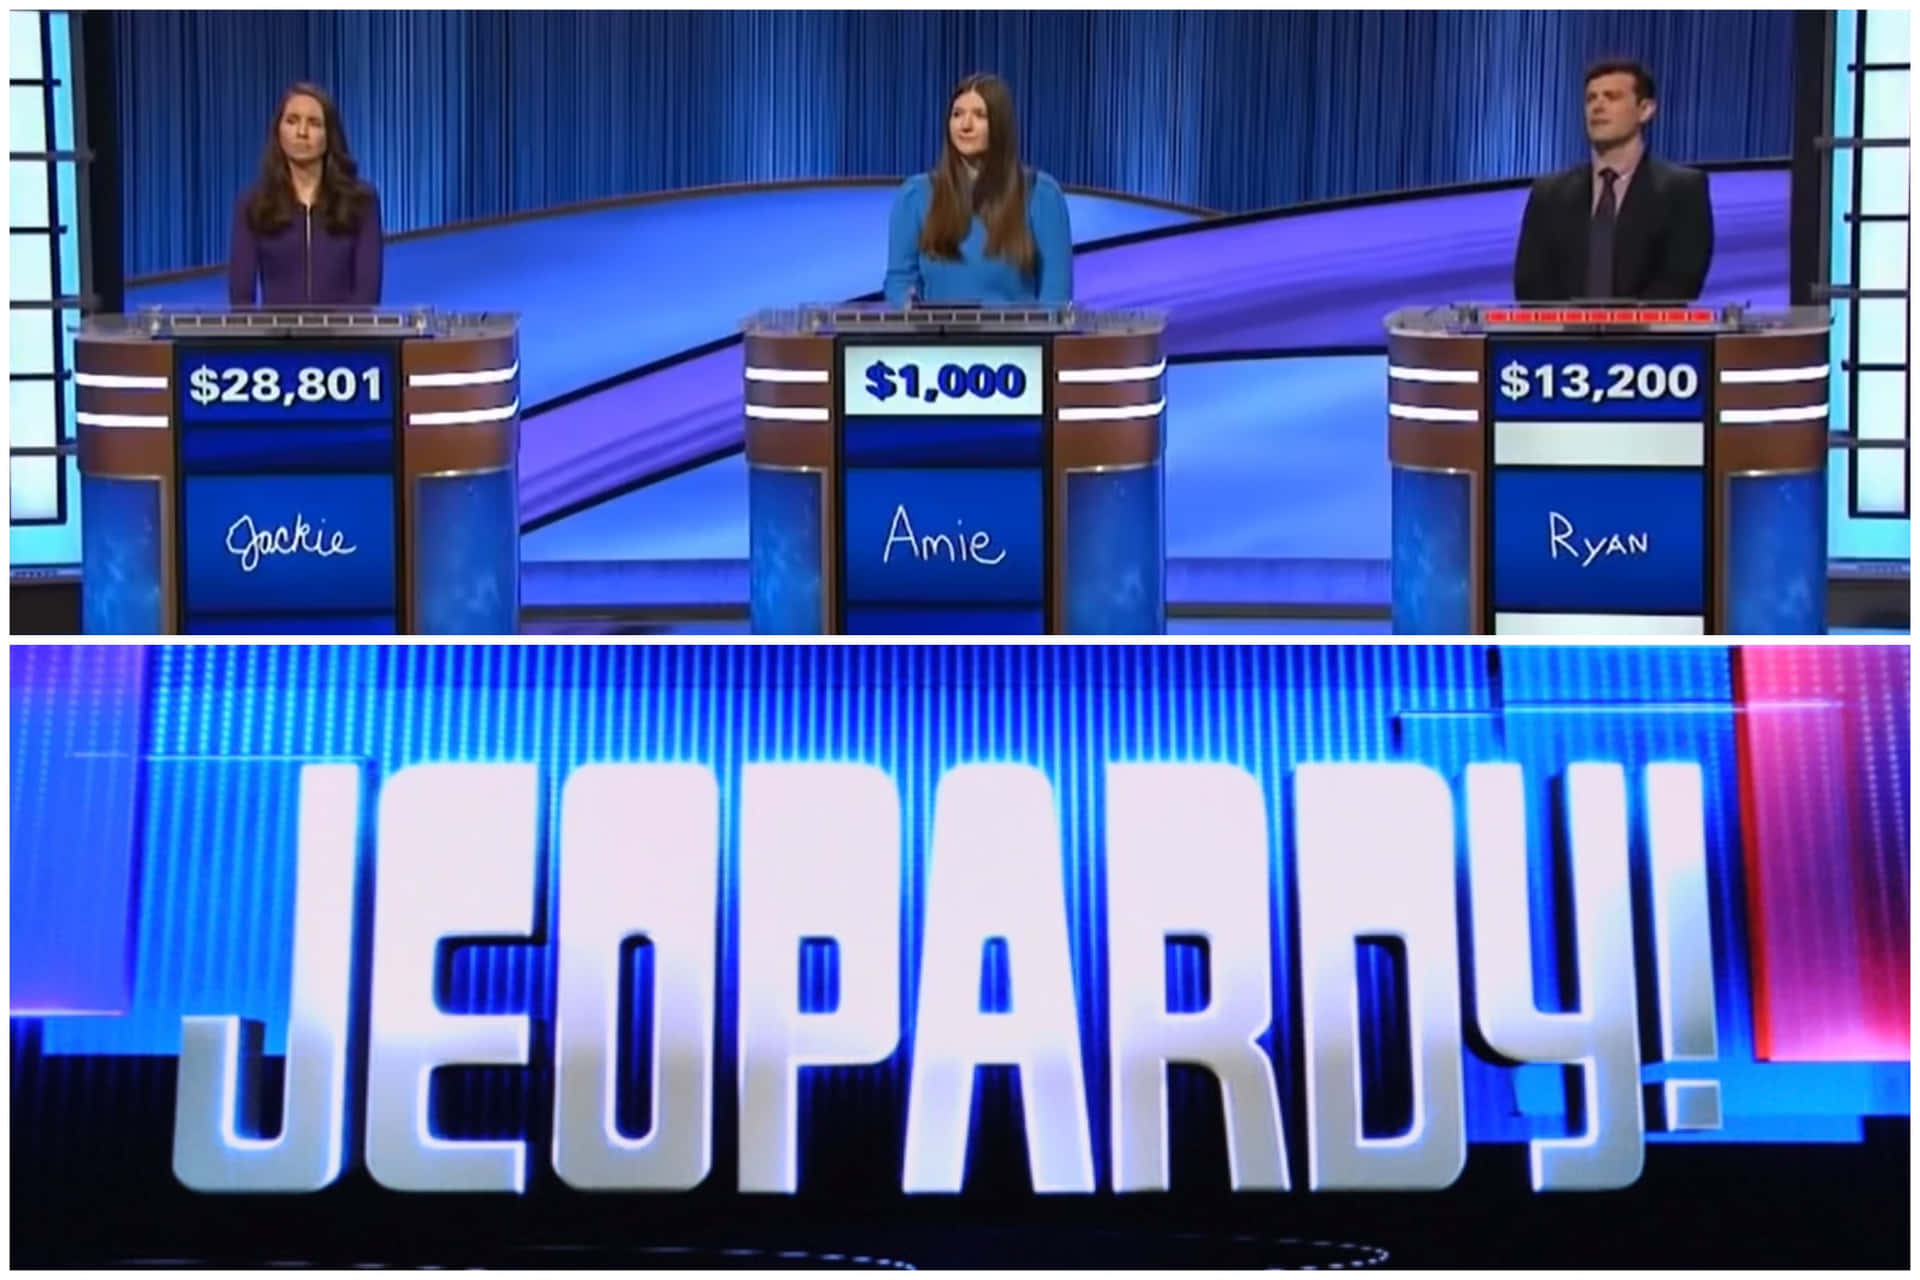 Jeopardyprograma De Televisión - Programa De Televisión - Programa De Televisión - Programa De Televisión